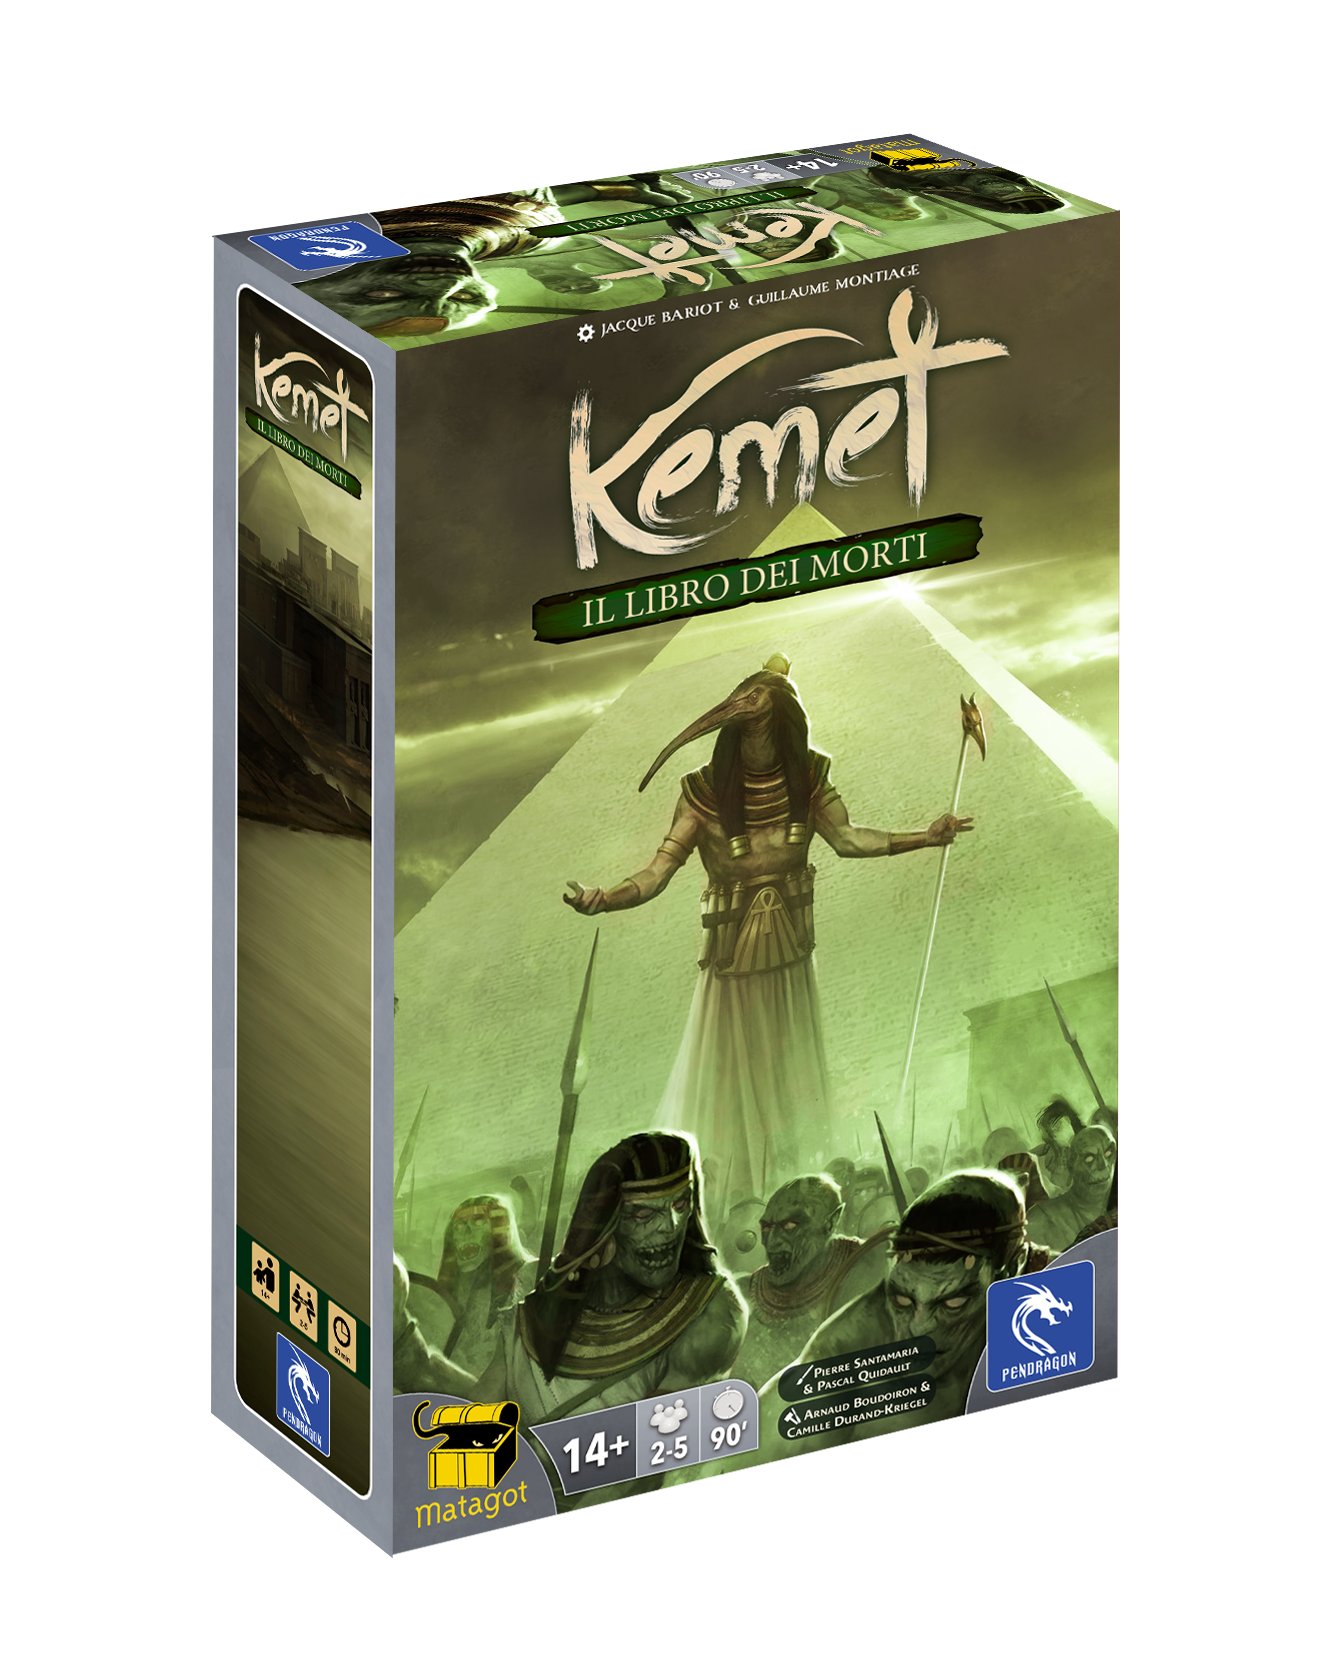 Kemet - Il Libro dei Morti